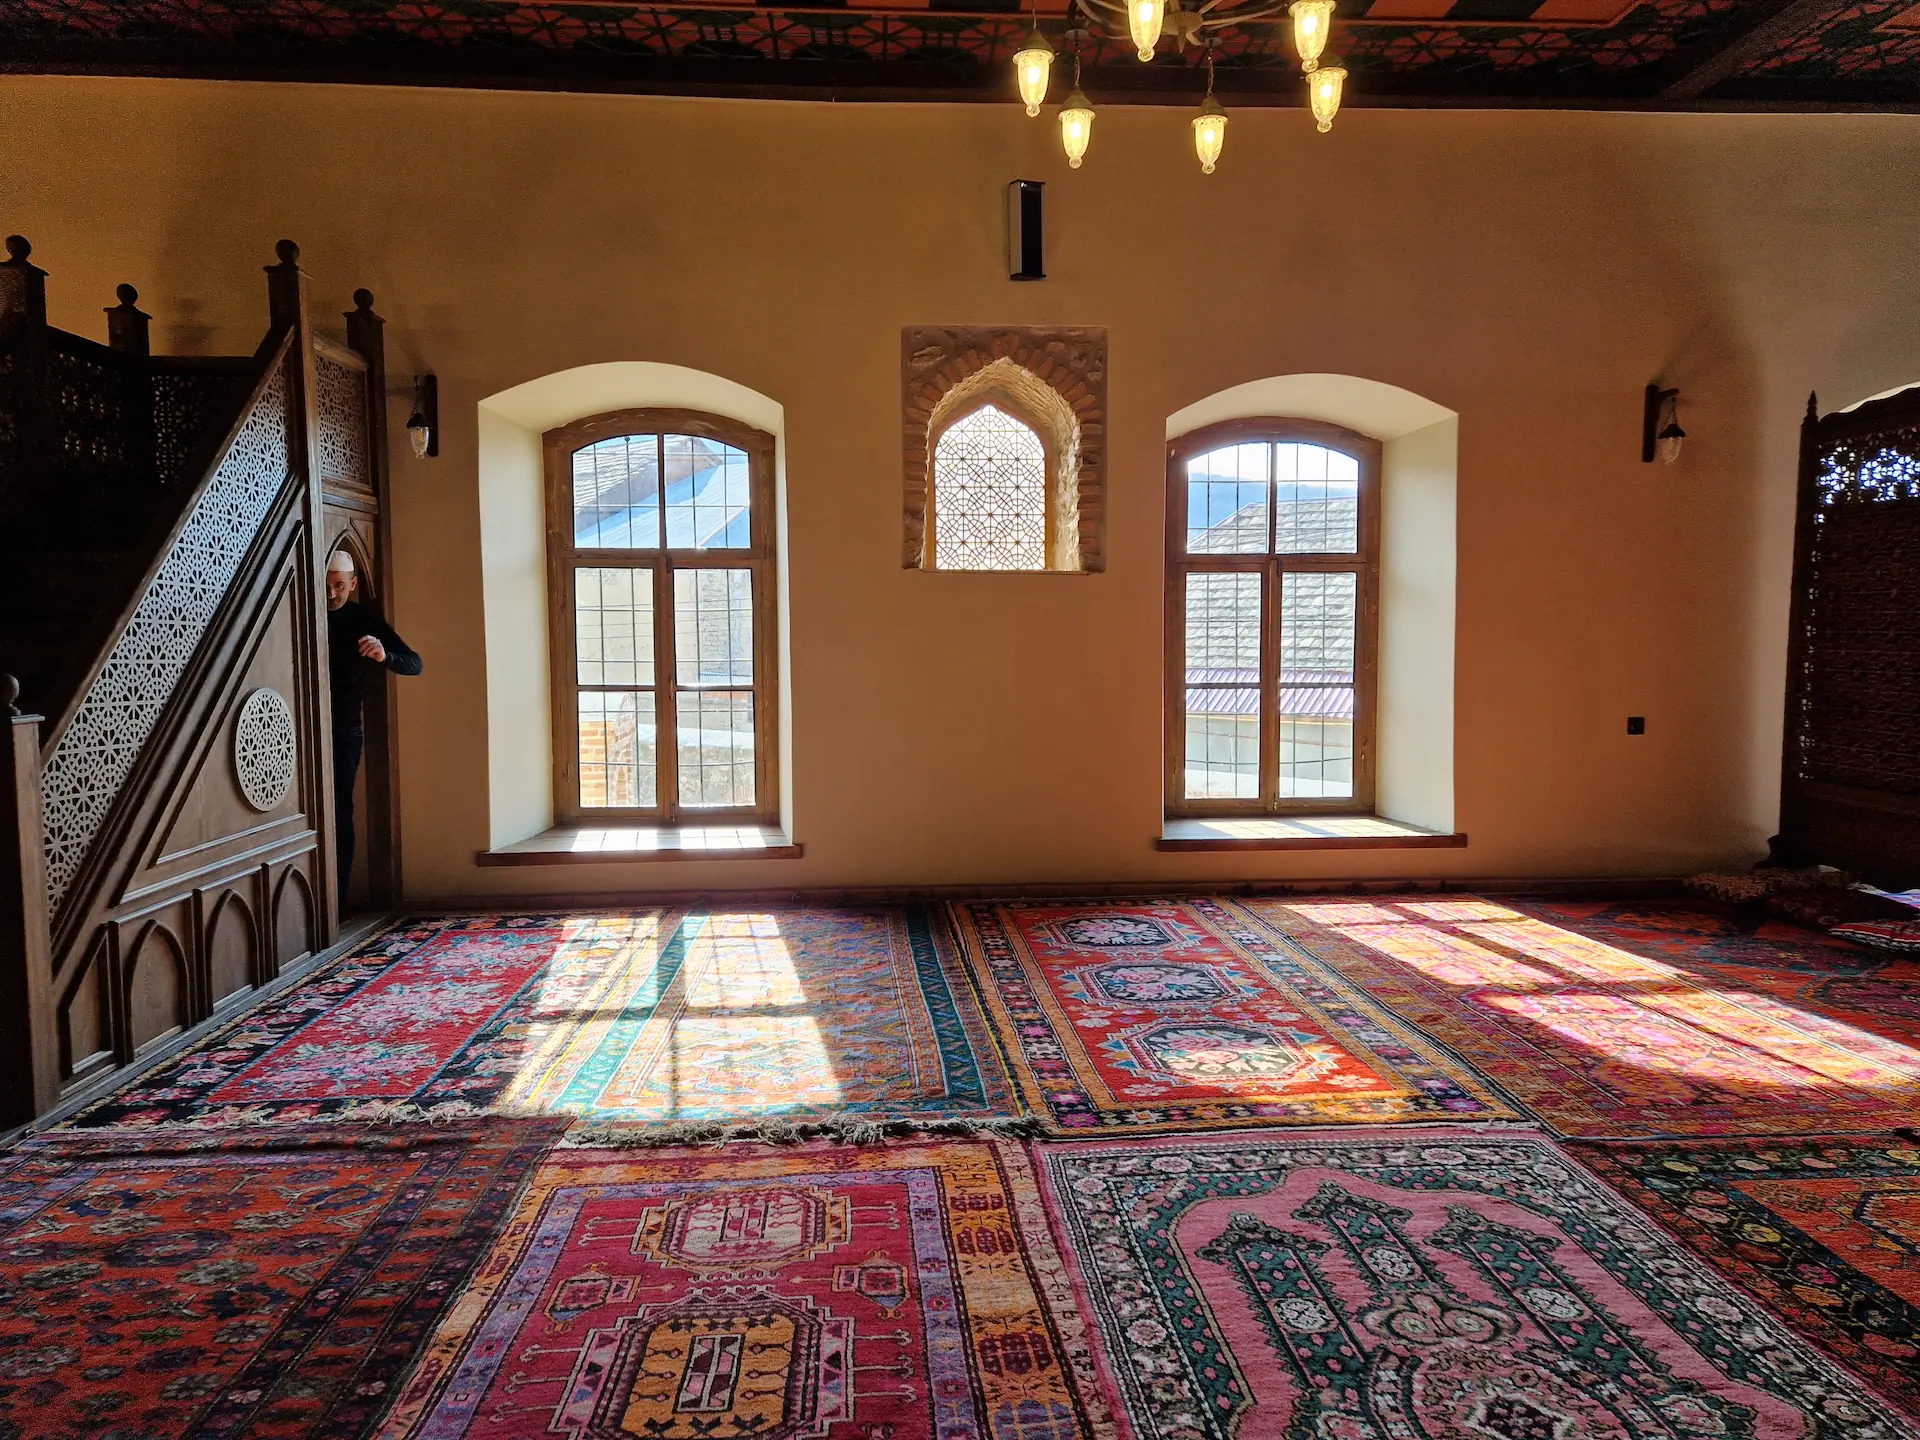 L'intérieur de la mosquée. Le sol est recouvert de tapis, on voit l'imam qui se prépare pour l'appel à la prière.